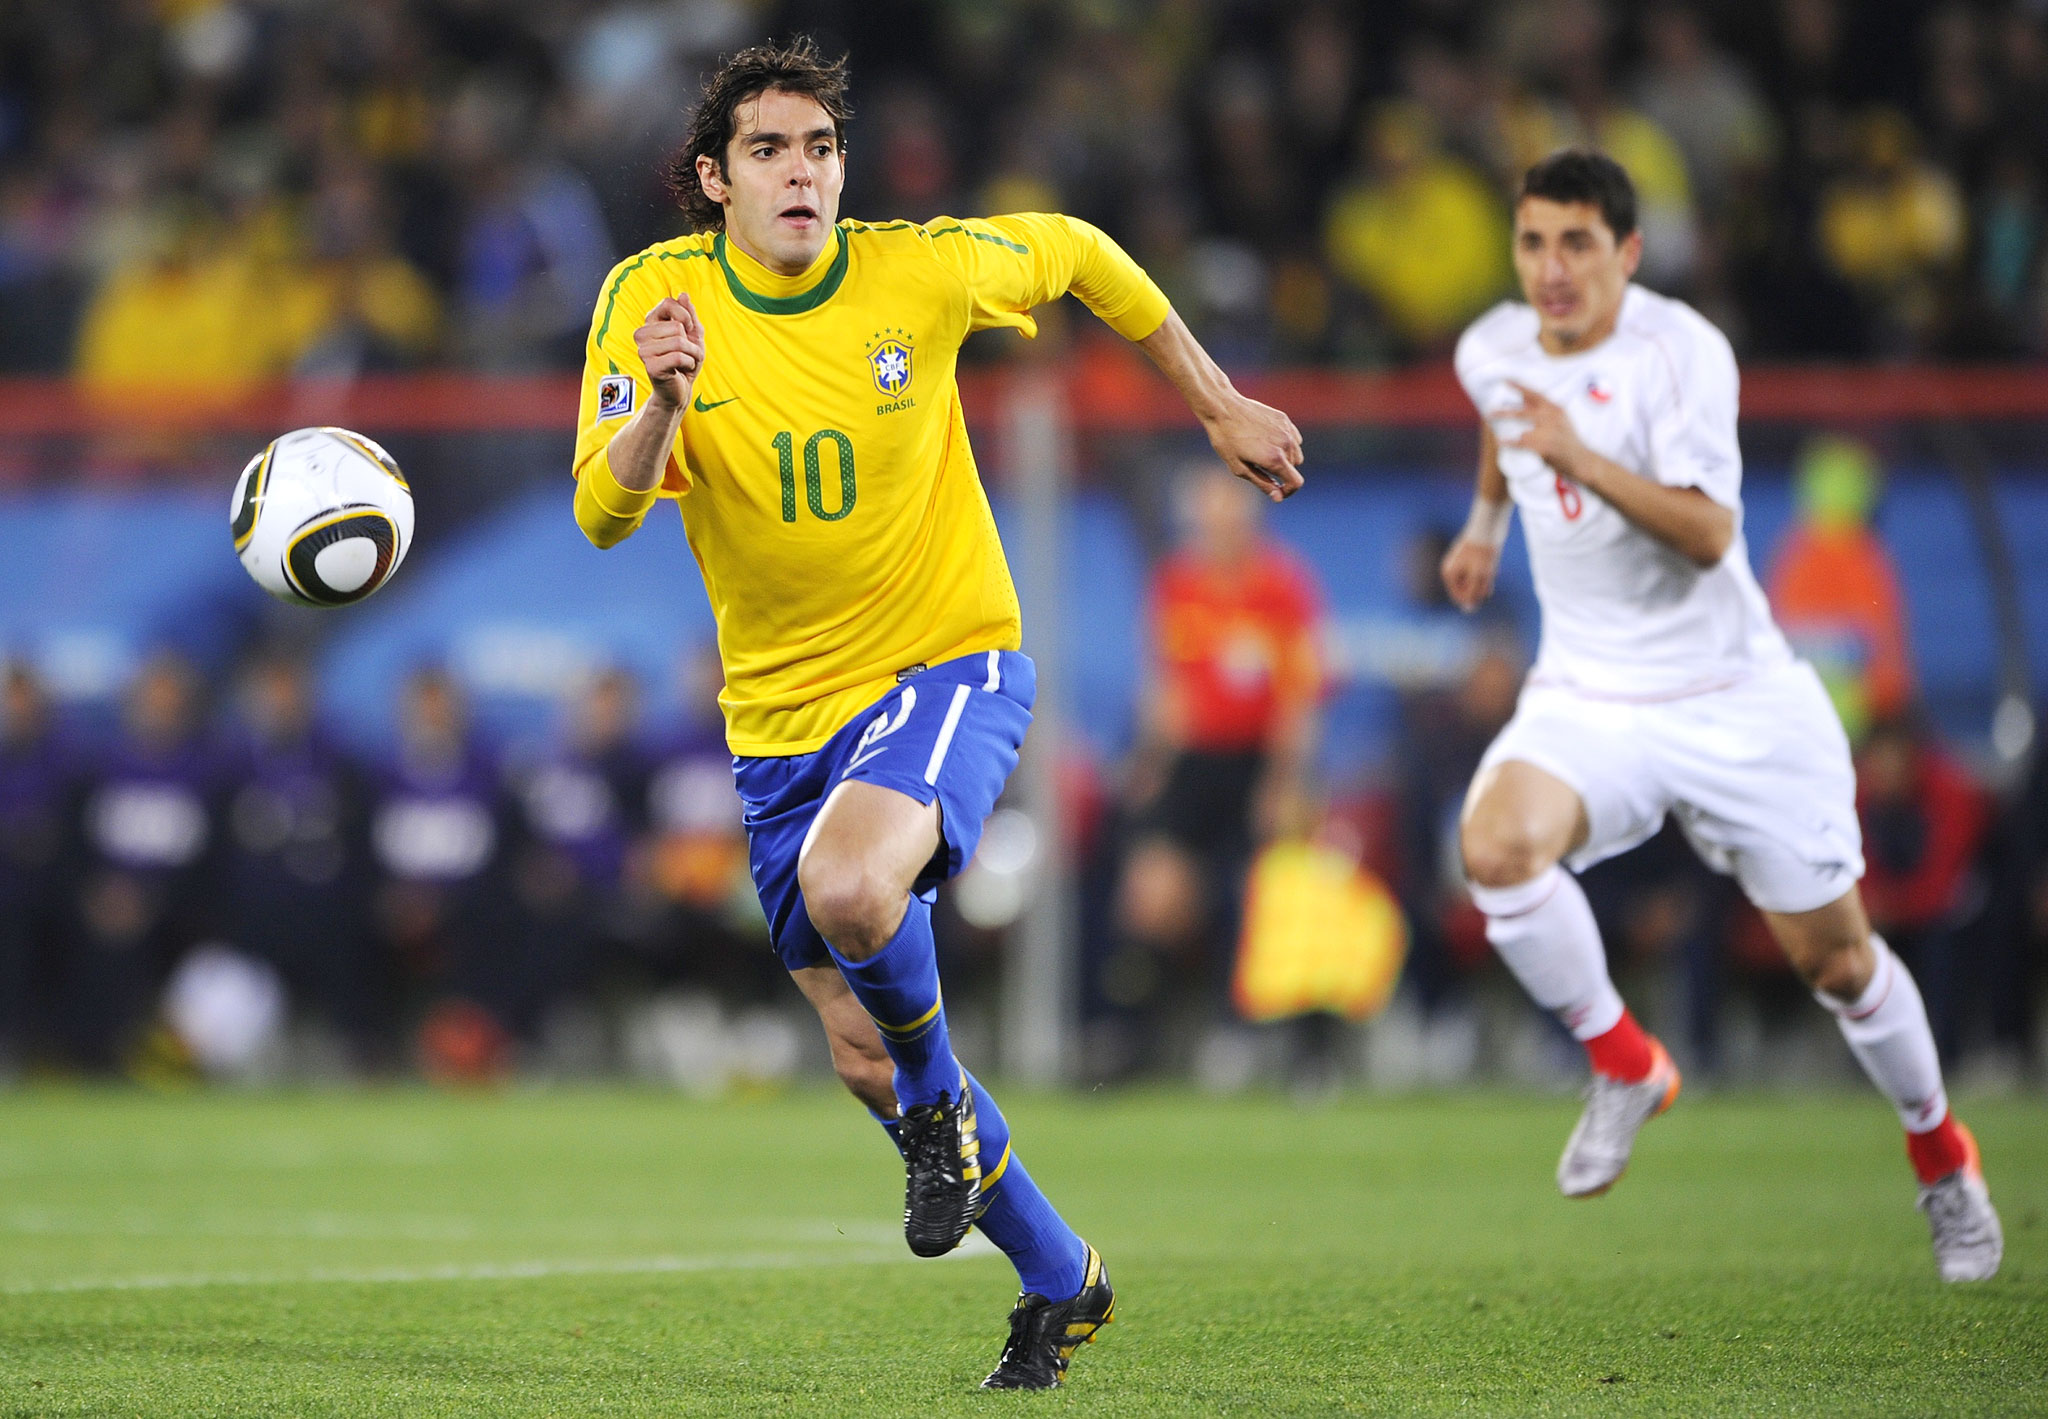 Brazil Soccer Player Kaka The Best Brazilian Soccer Player From Brazil National Ricardo